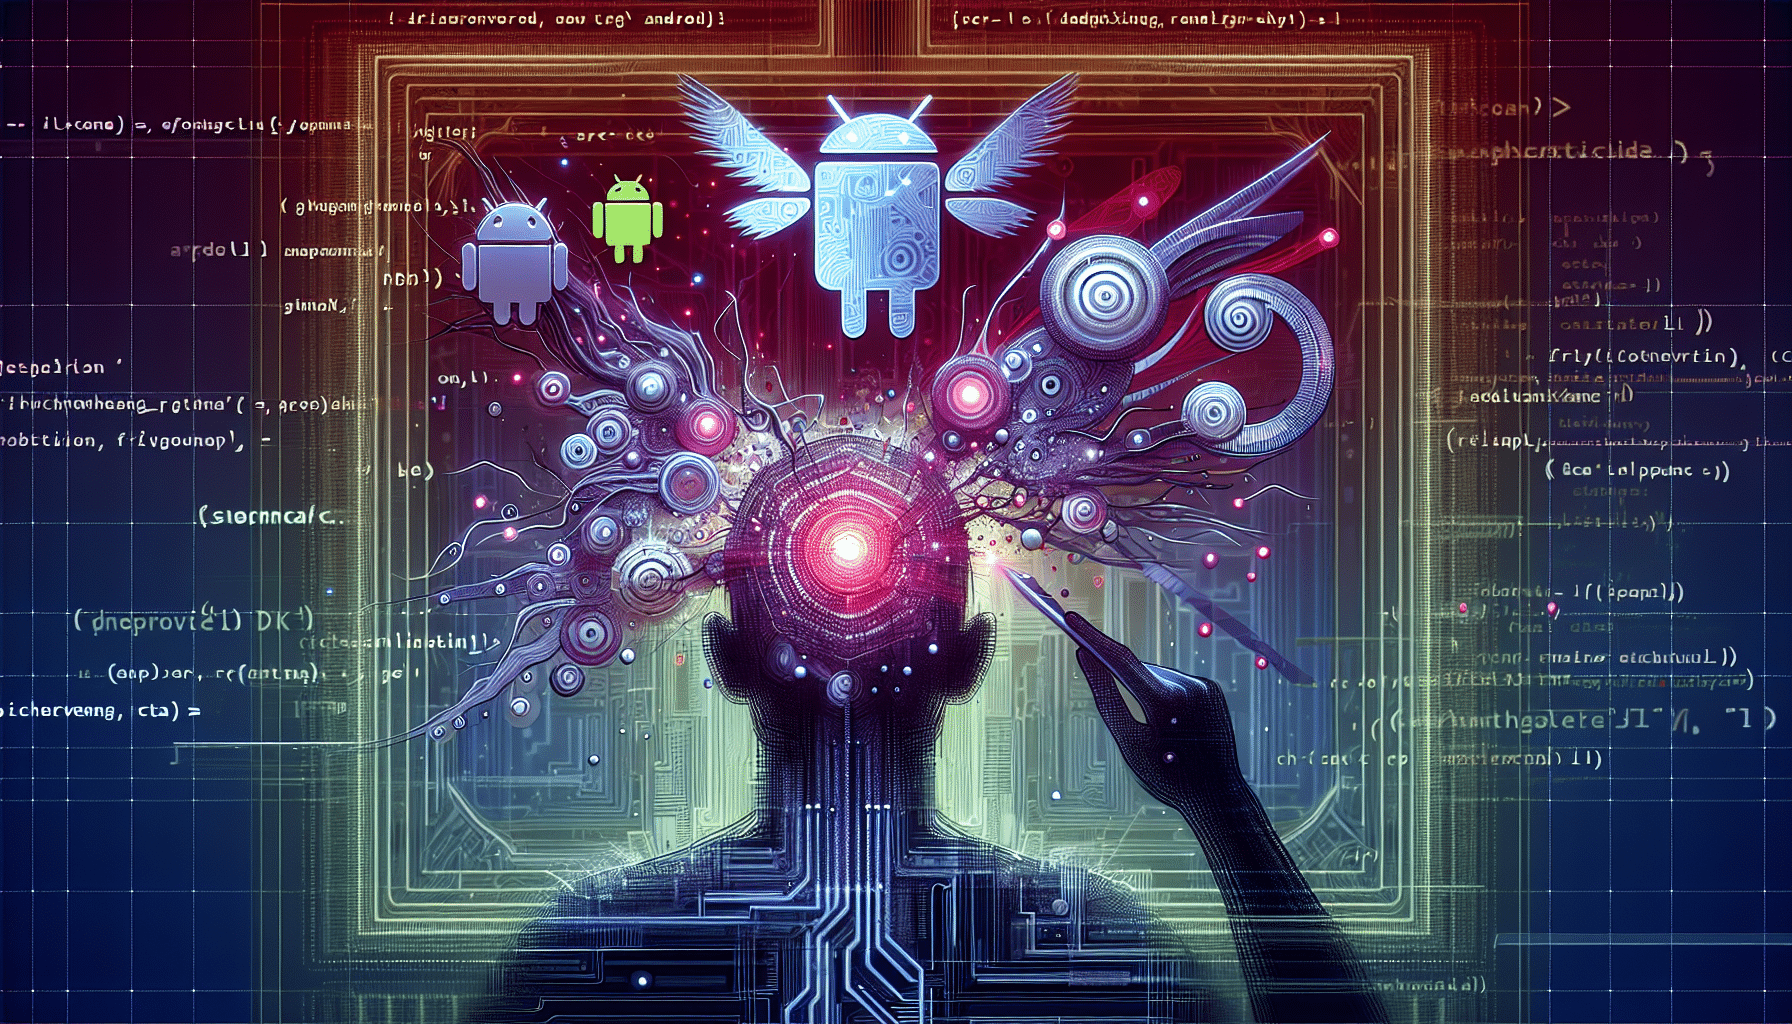 découvrez la nouvelle faille android et apprenez-en plus sur cette vulnérabilité informatique.